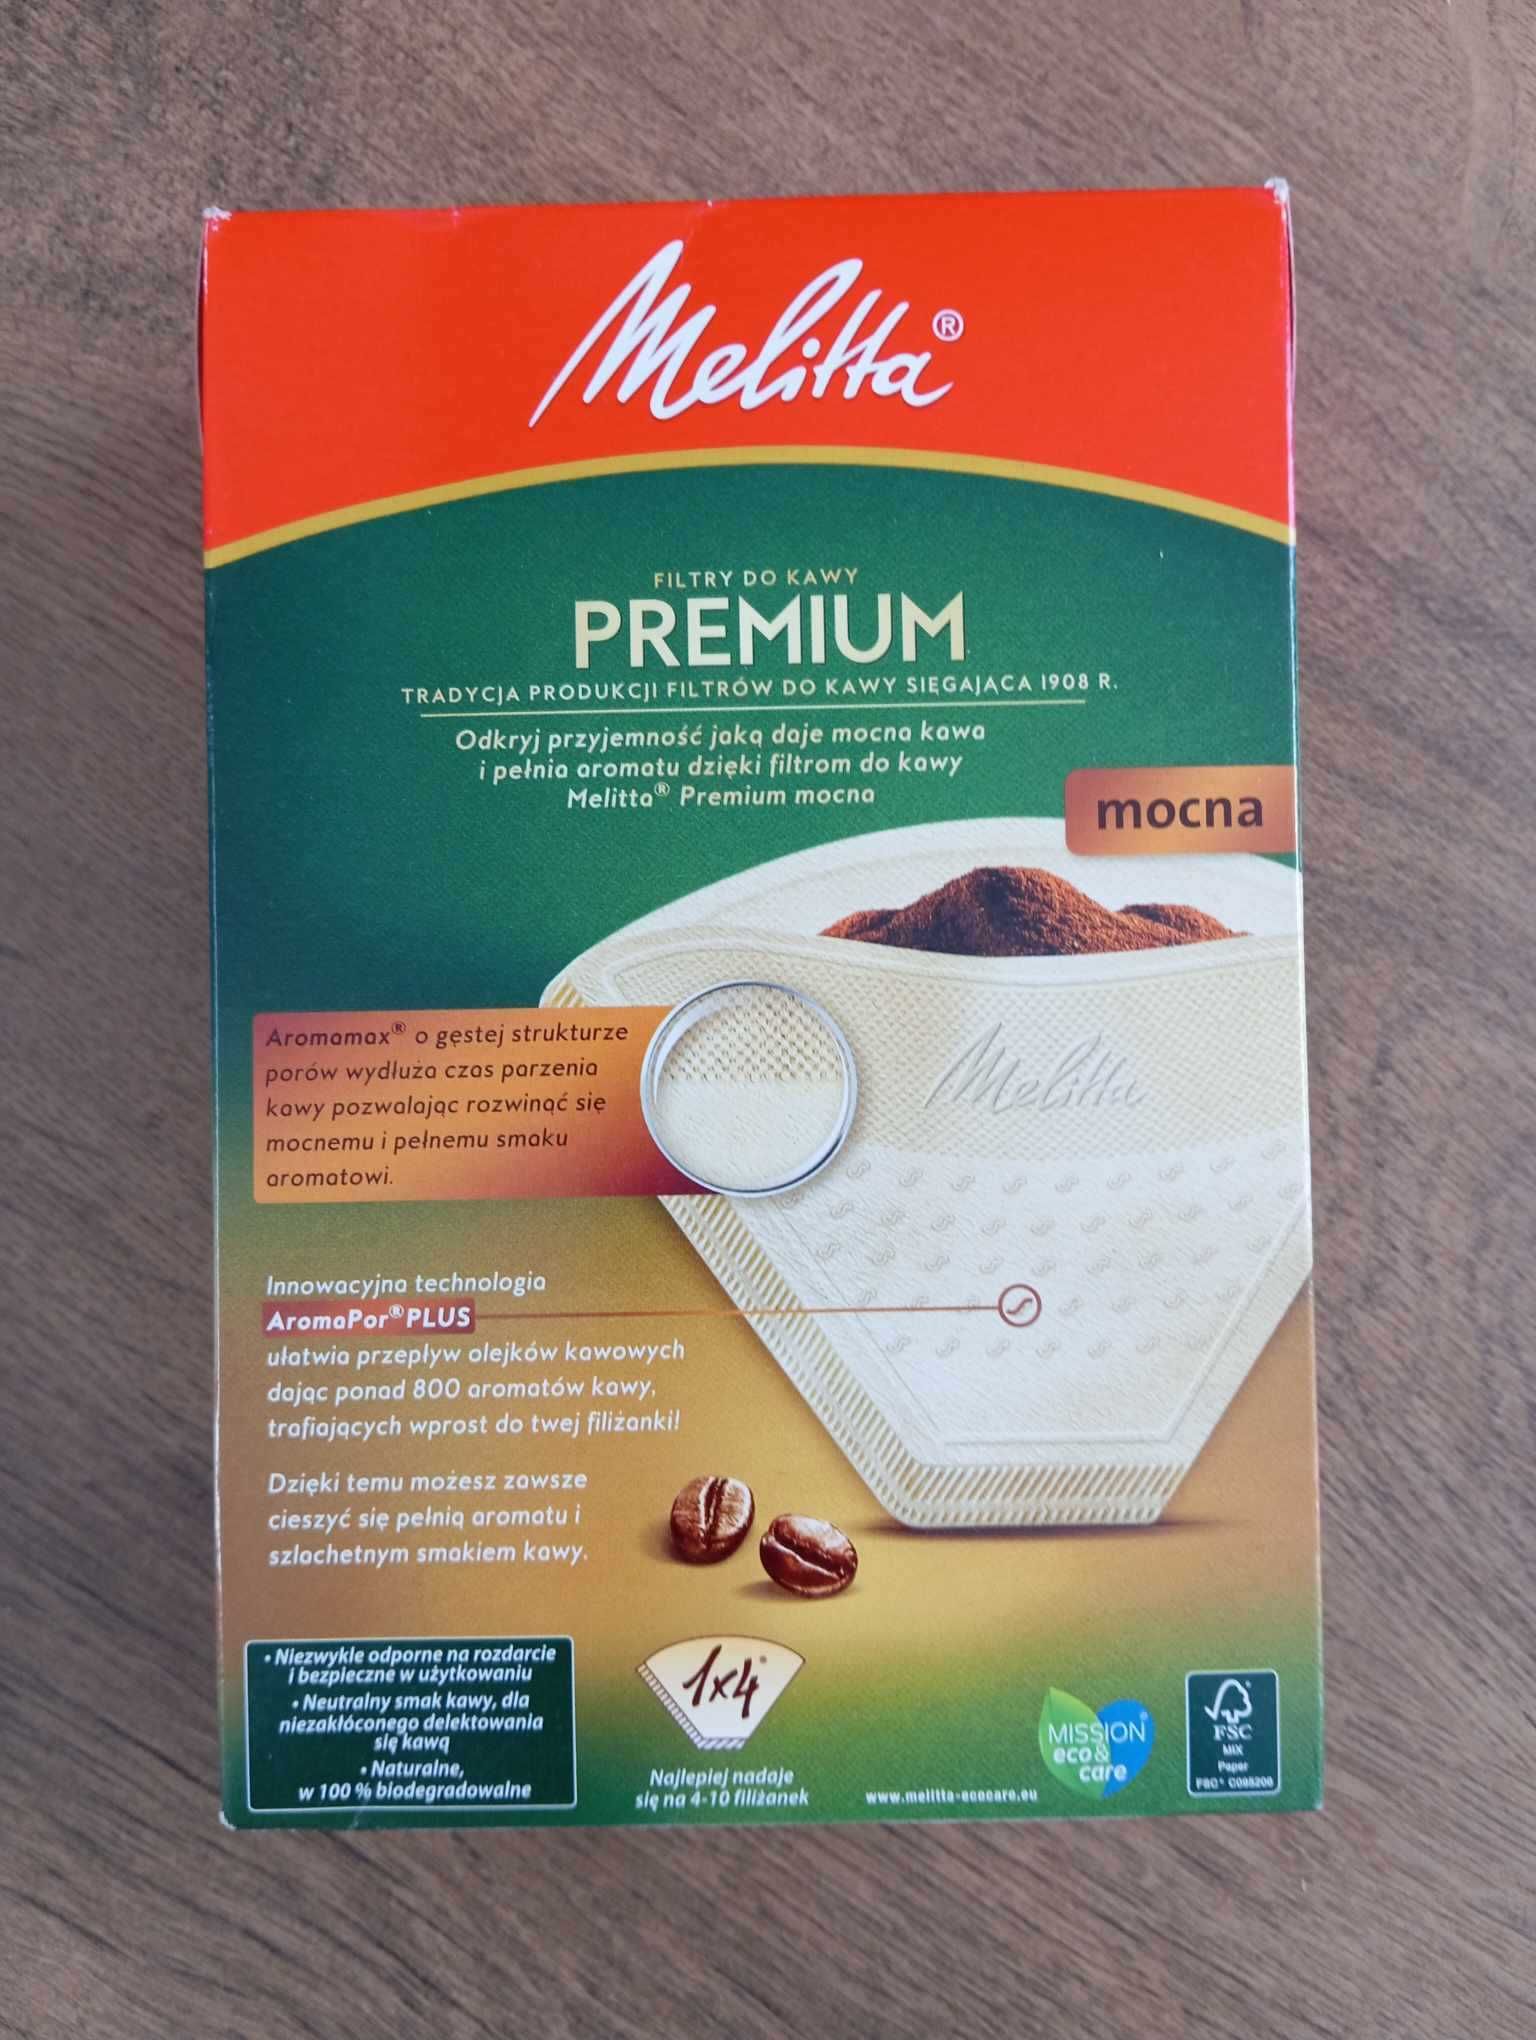 Papierowe filtry do kawy premium marki Melitta - 80 sztuk - Rozmiar 4